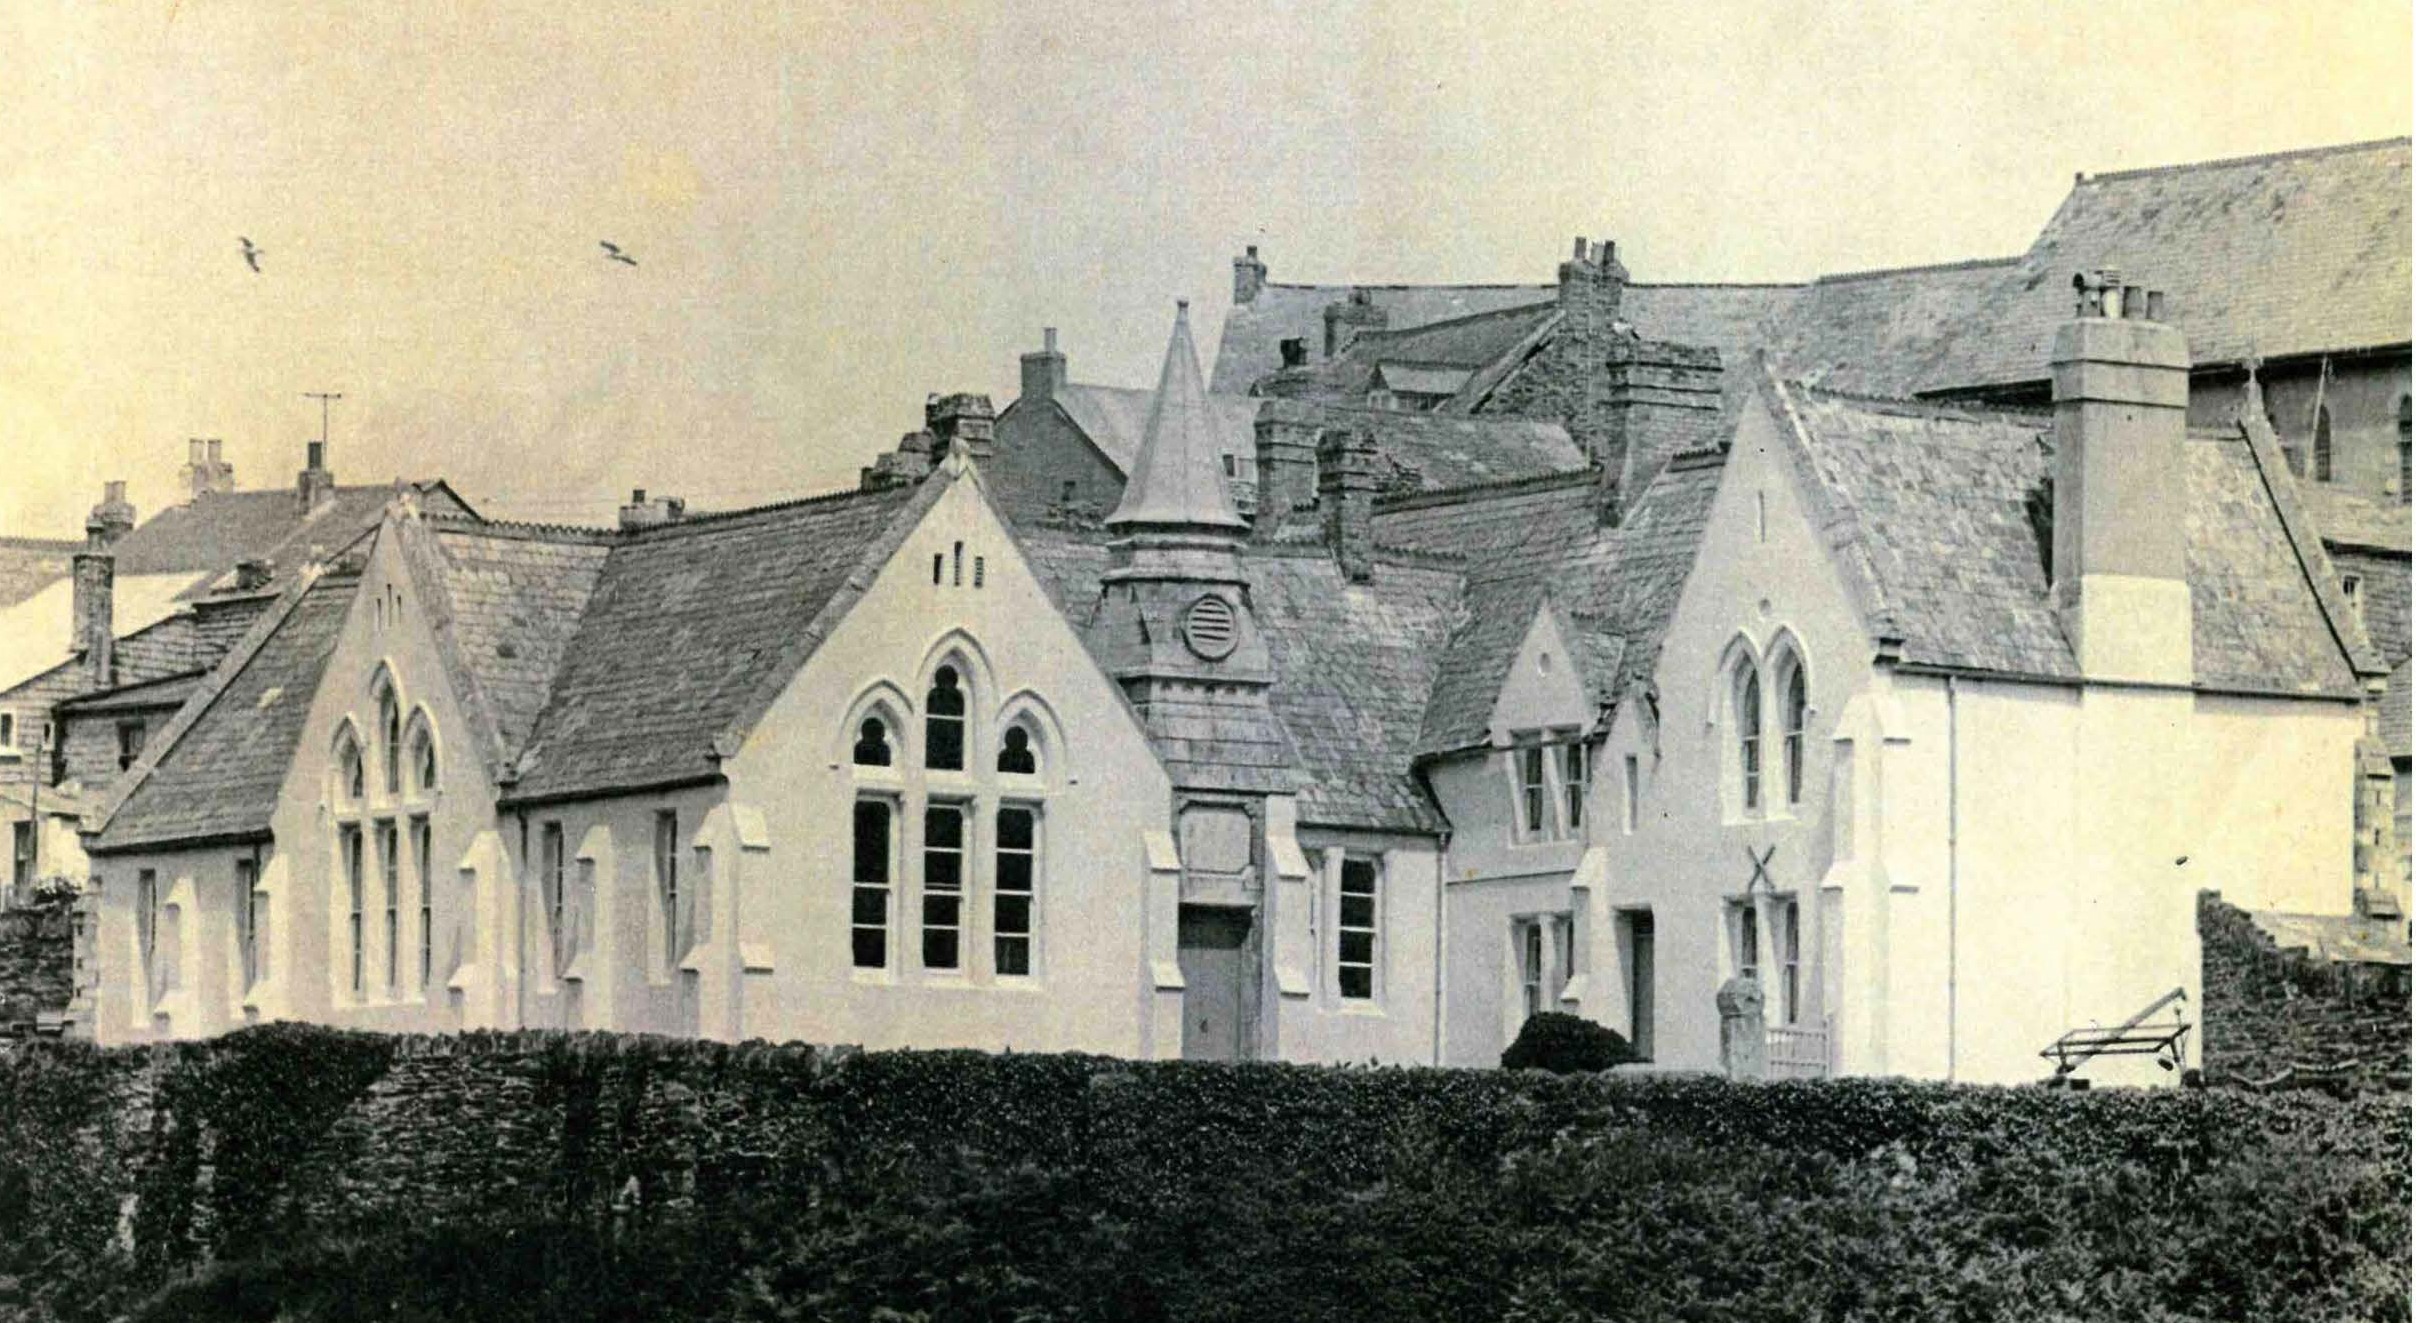 Port Isaac 'old school' - 1970